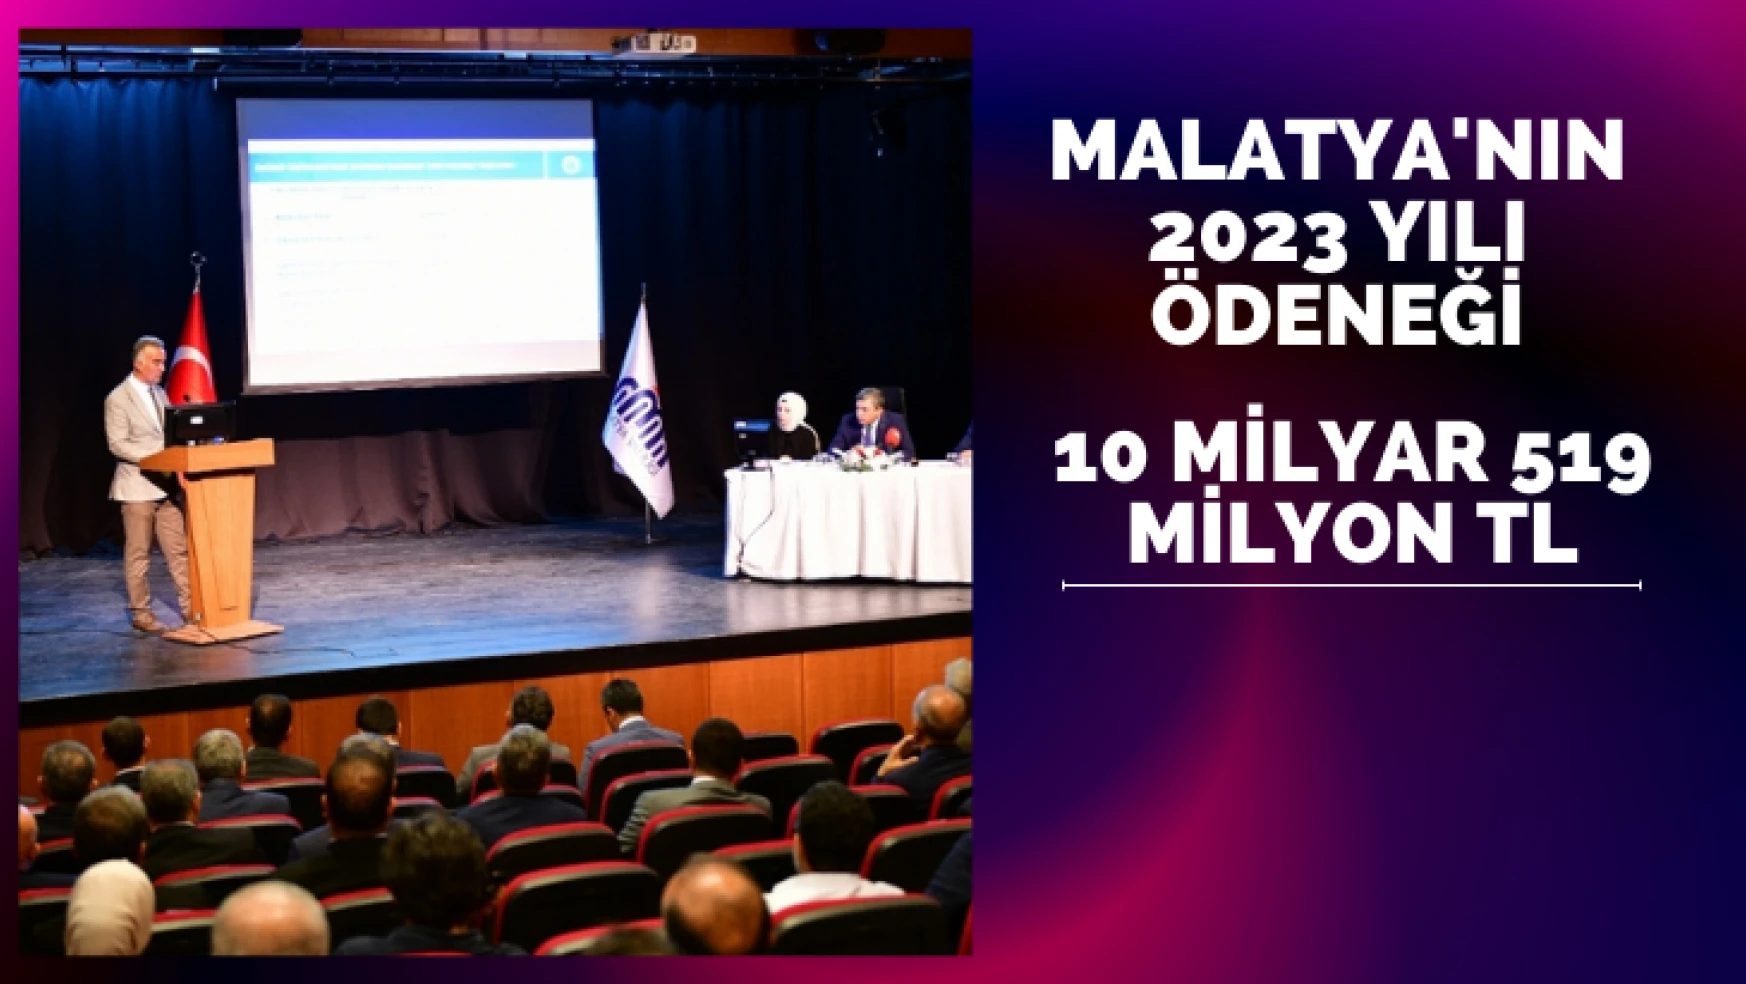 Malatya'nın 2023 yılı ödeneği 10 milyar 519 milyon TL